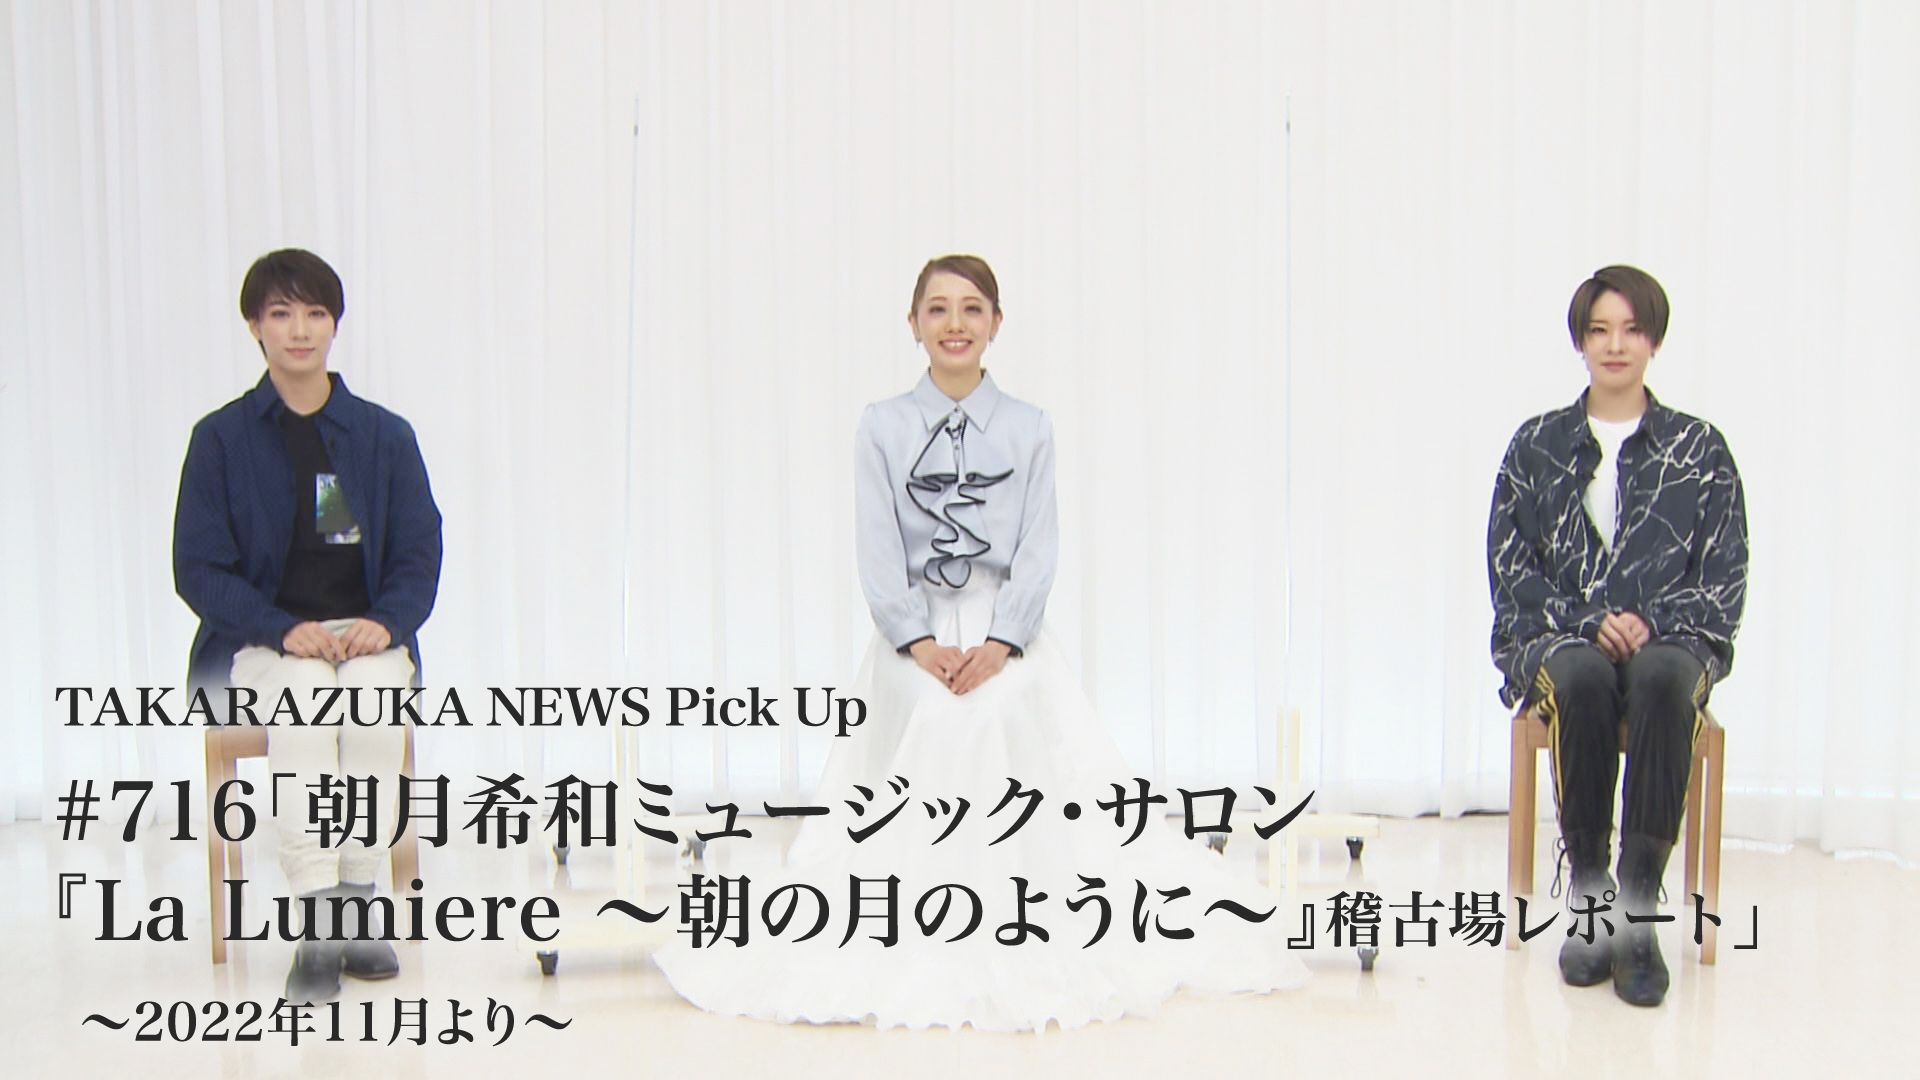 TAKARAZUKA NEWS Pick Up #716「朝月希和ミュージック・サロン『La Lumiere 〜朝の月のように〜』稽古場レポート」〜2022年11月より〜